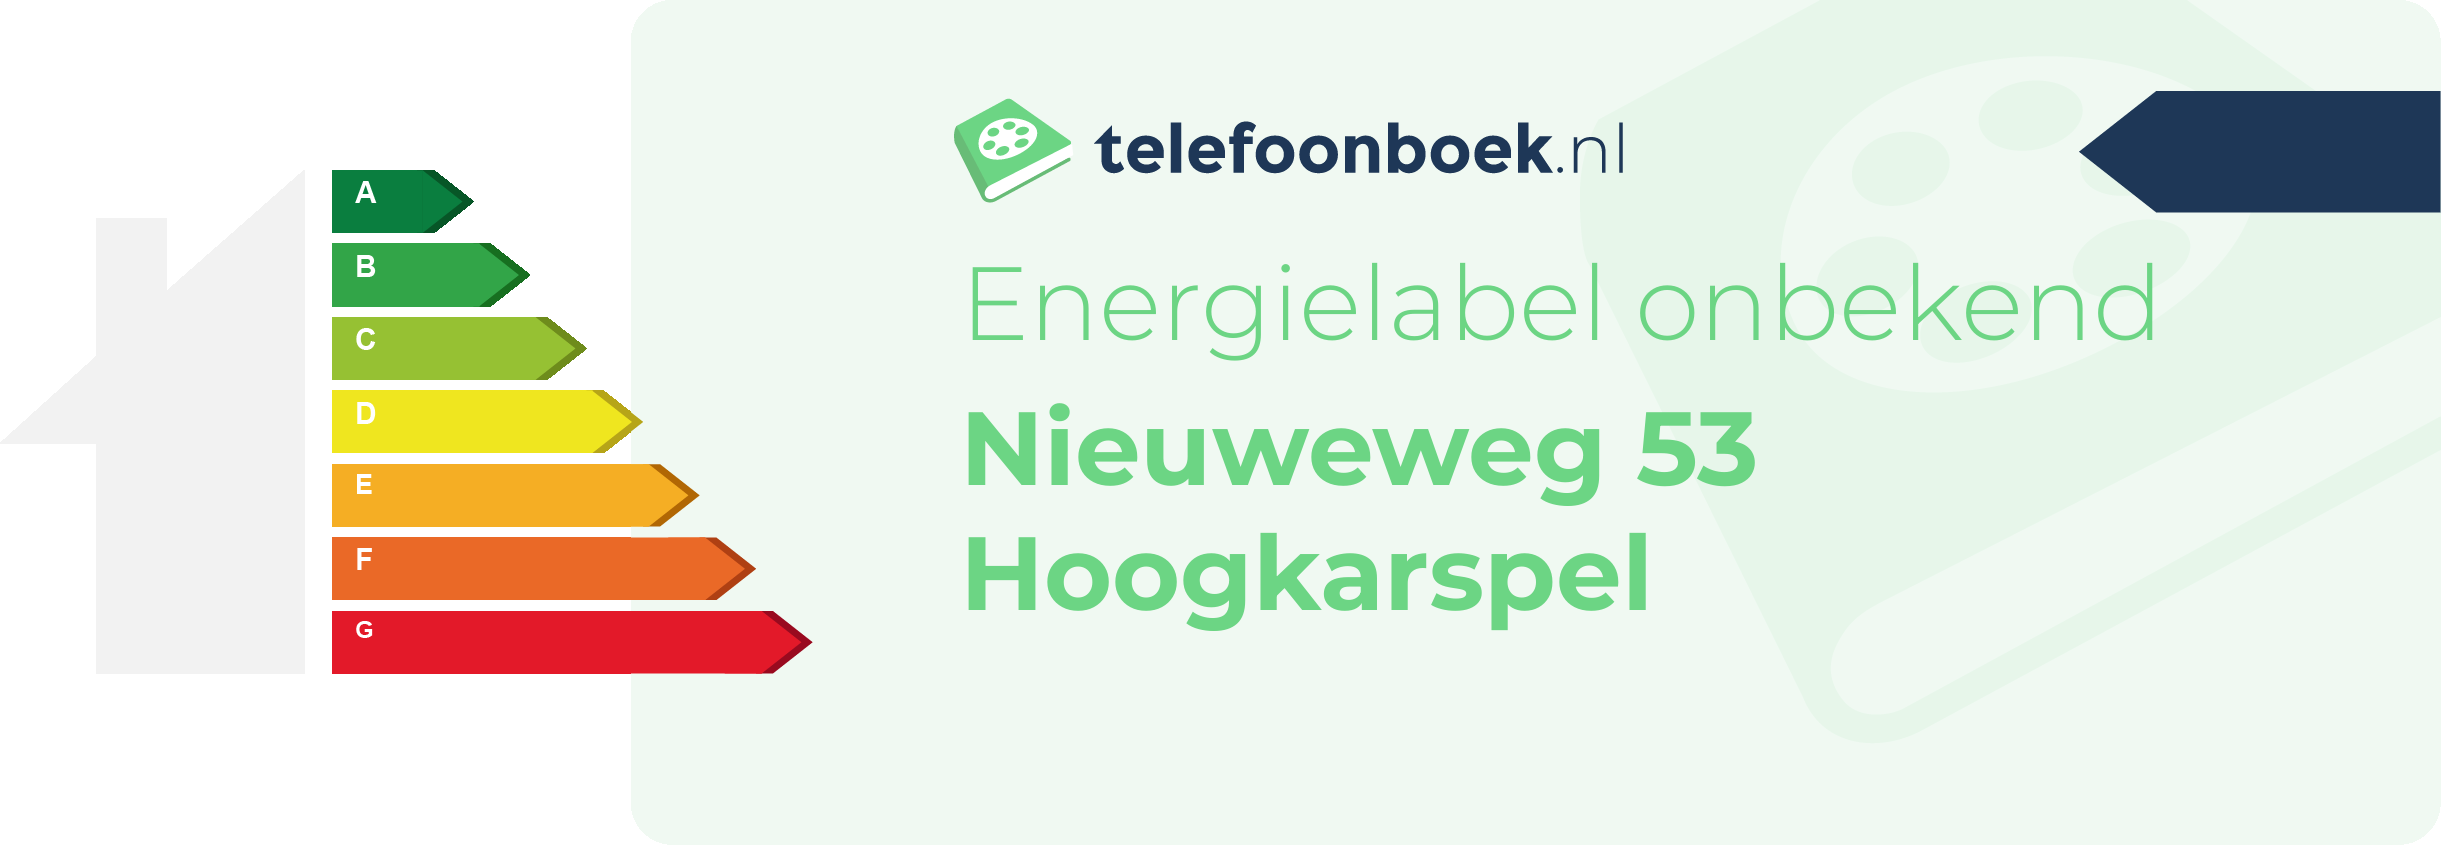 Energielabel Nieuweweg 53 Hoogkarspel